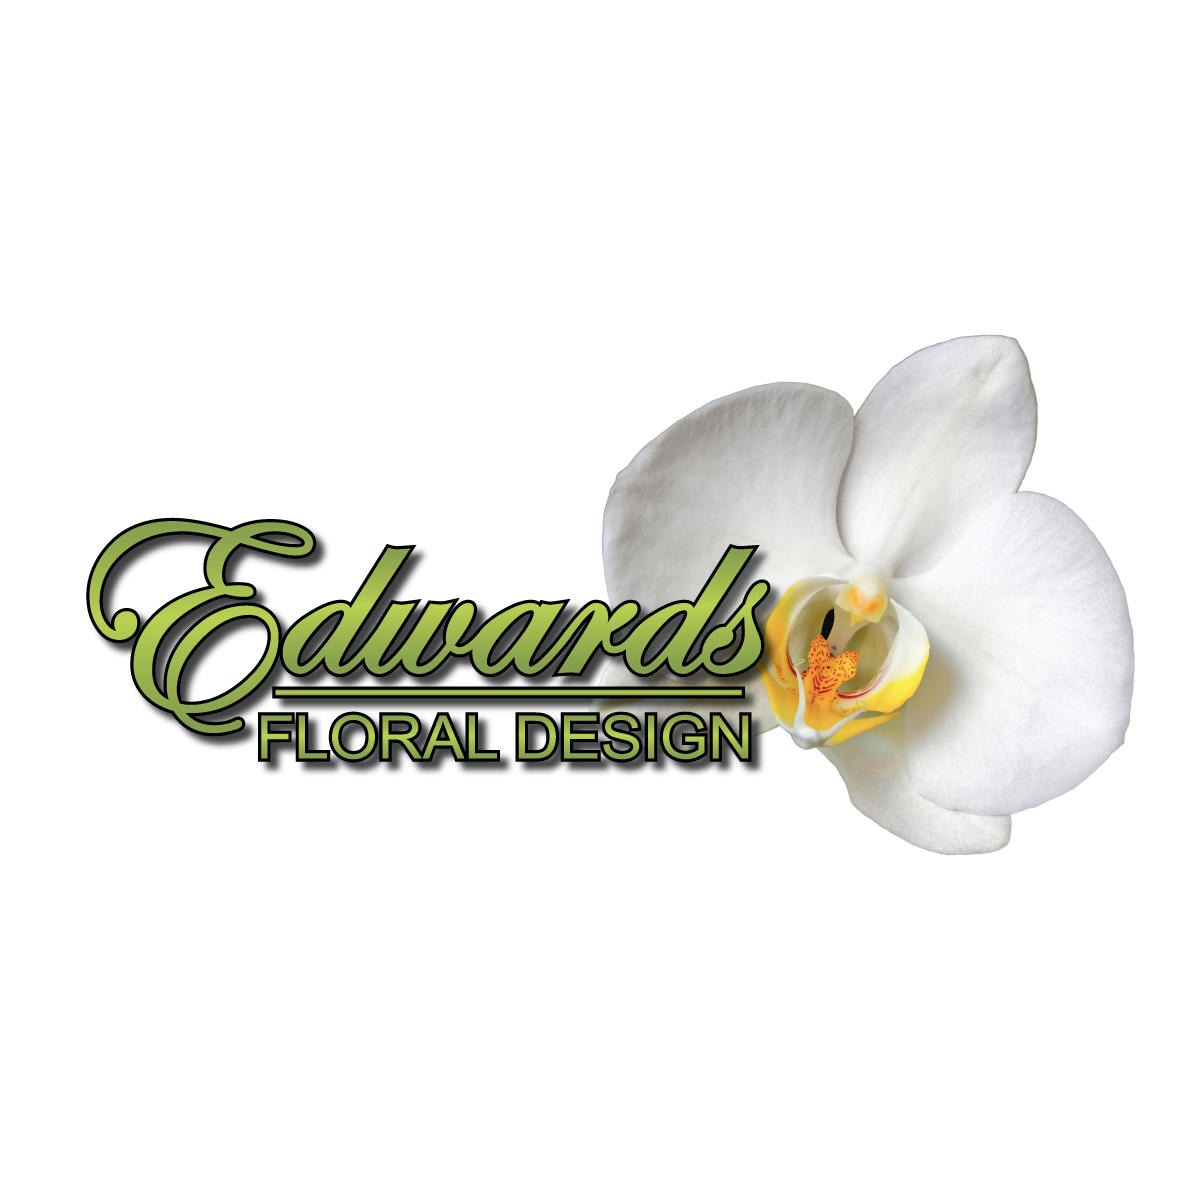 Edwards Floral Design